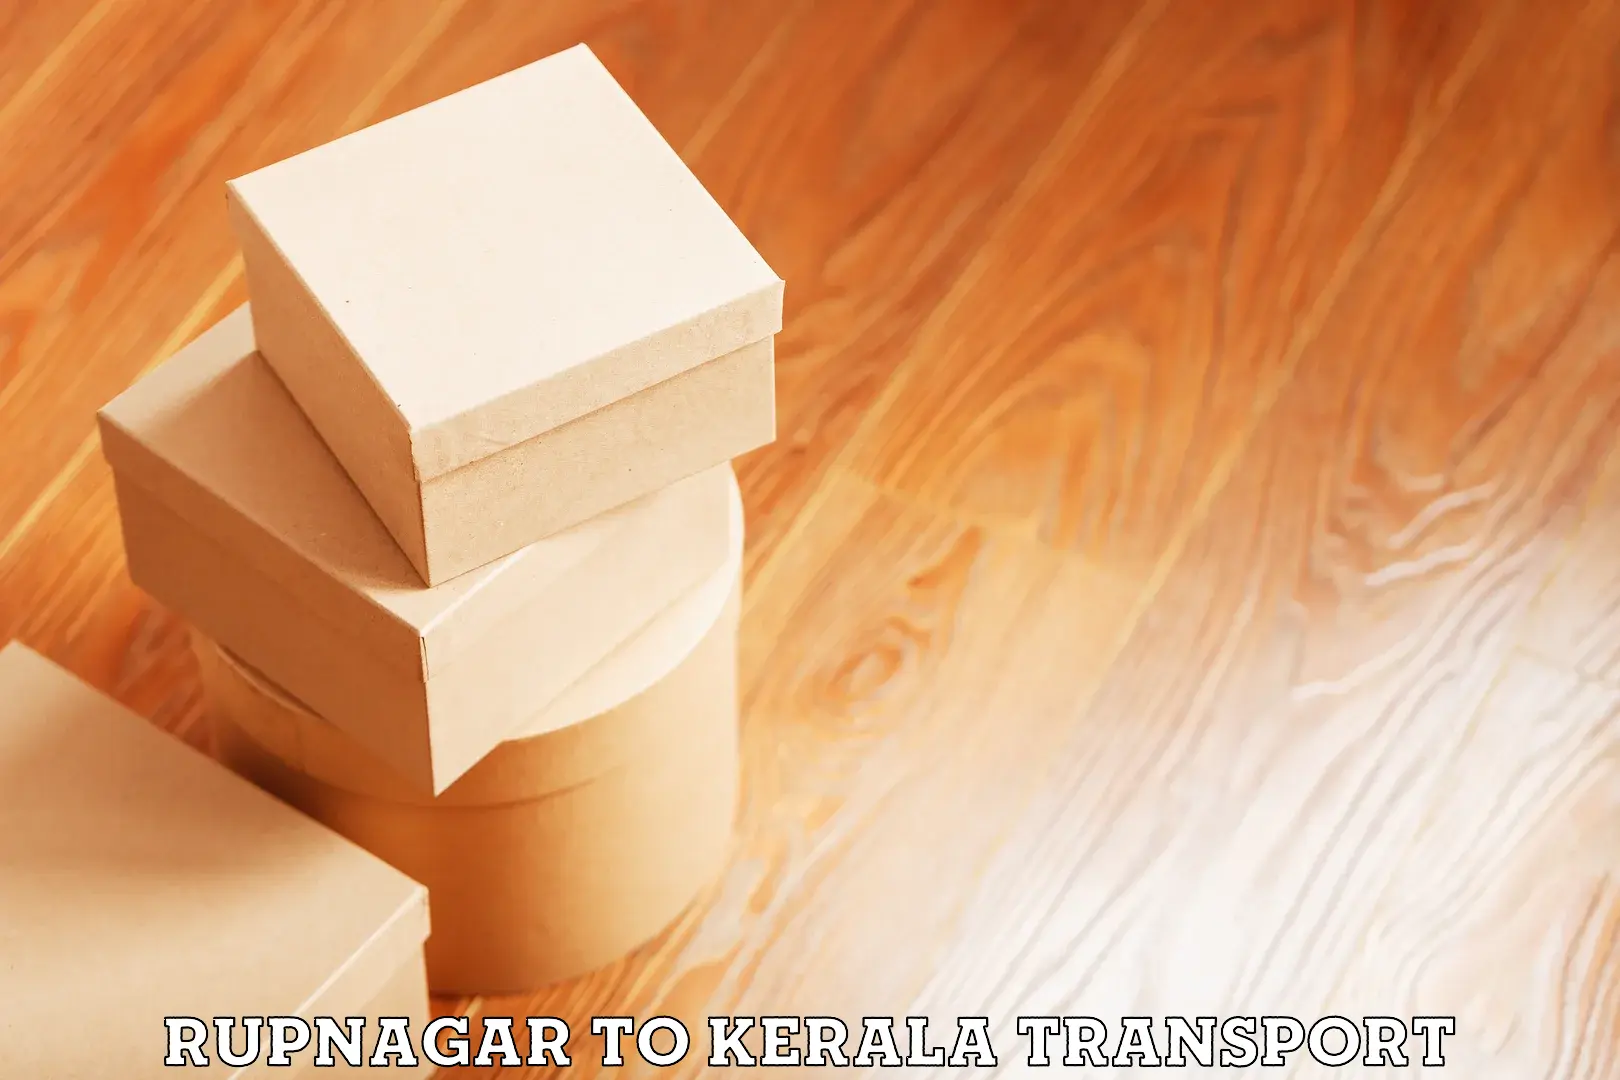 International cargo transportation services Rupnagar to Kattappana